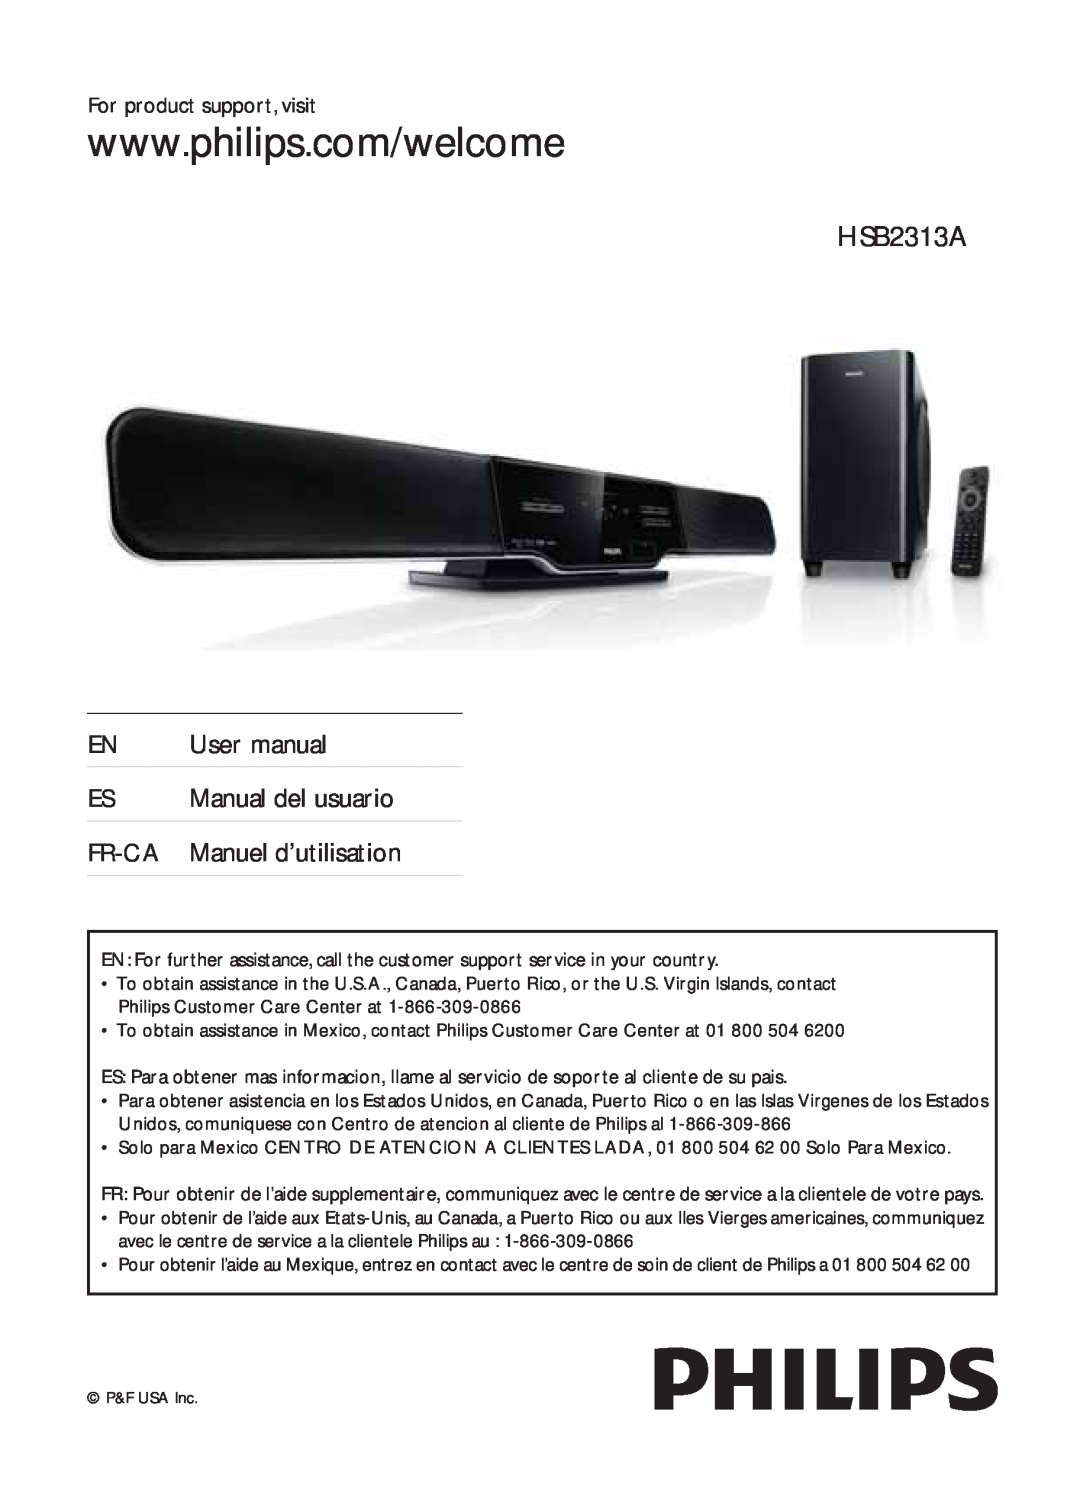 Philips HSB2313A/F7 user manual FR-CAManuel d’utilisation 